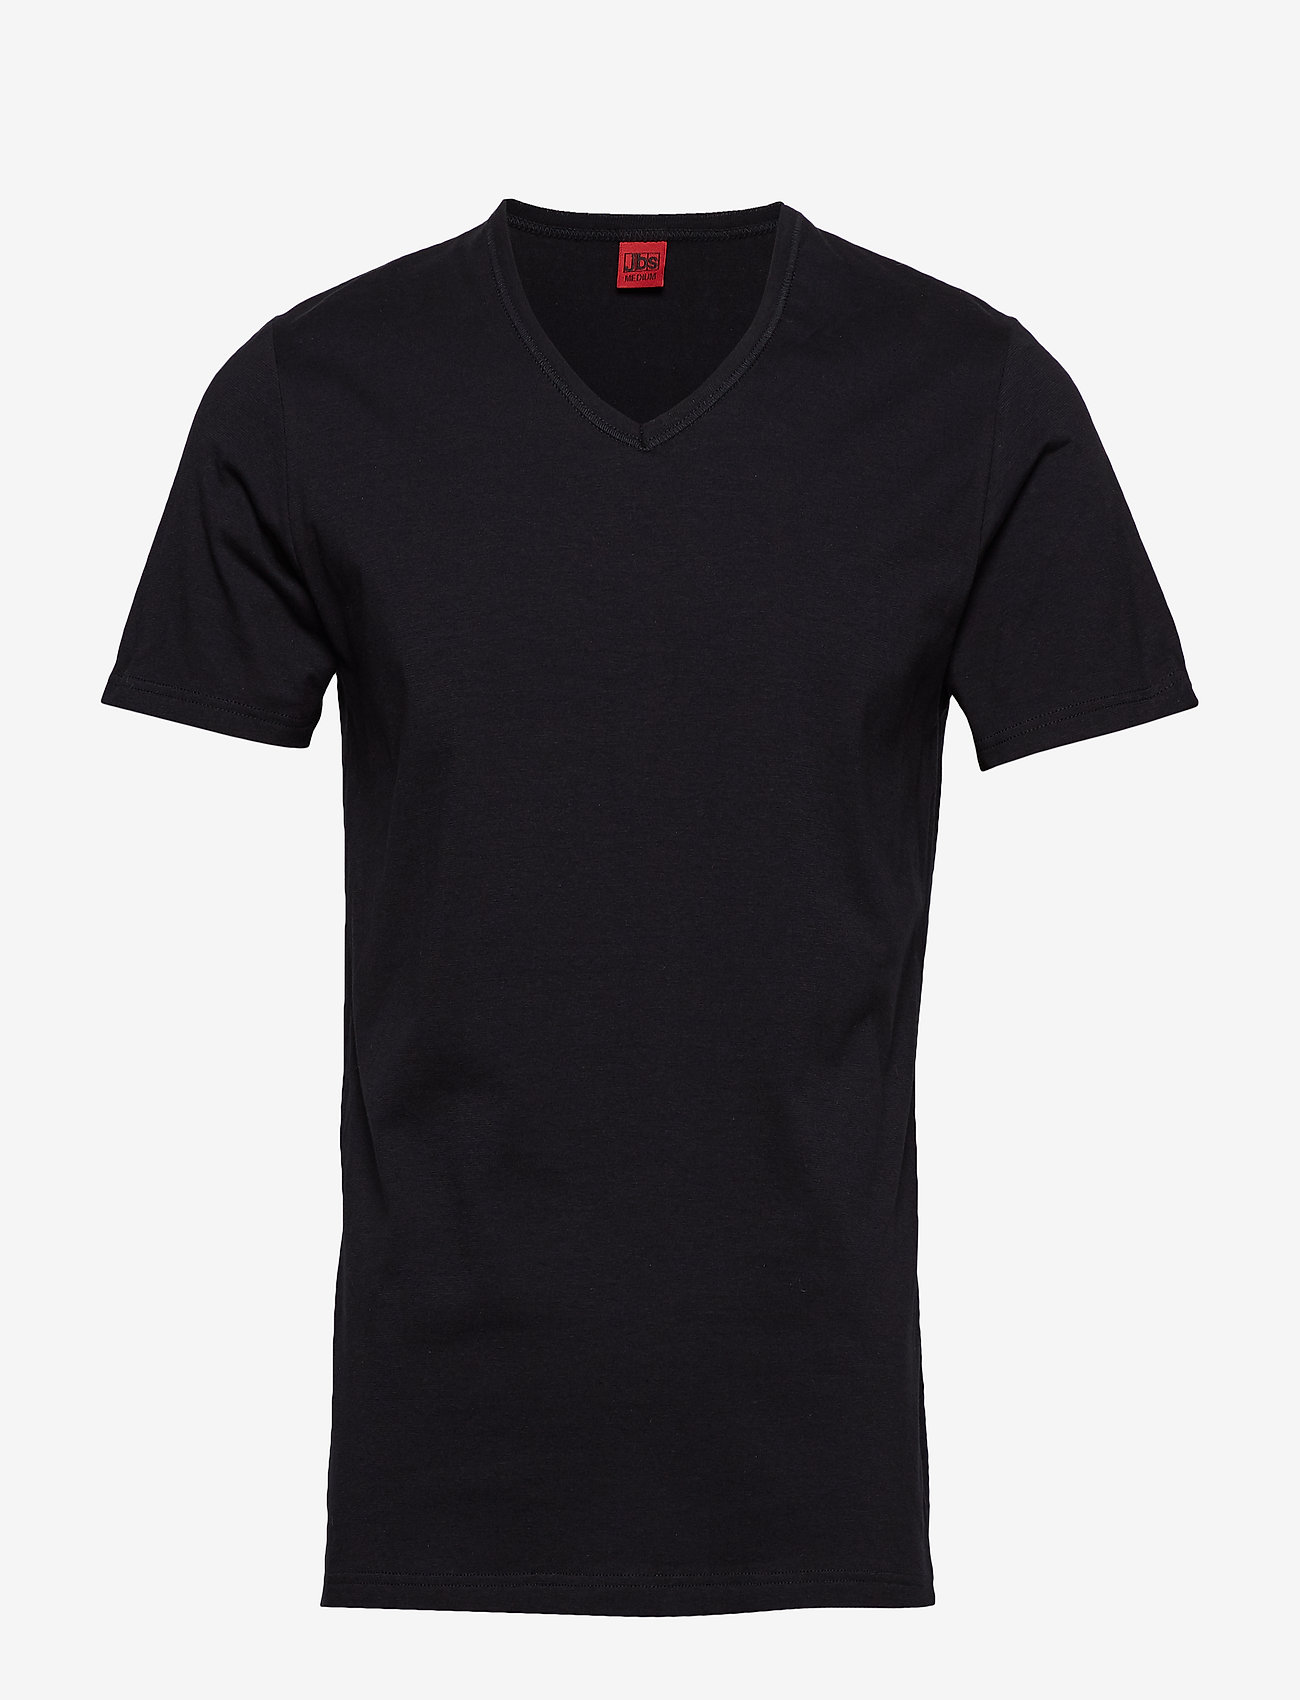 JBS - JBS t-shirt  V-neck - najniższe ceny - black - 0